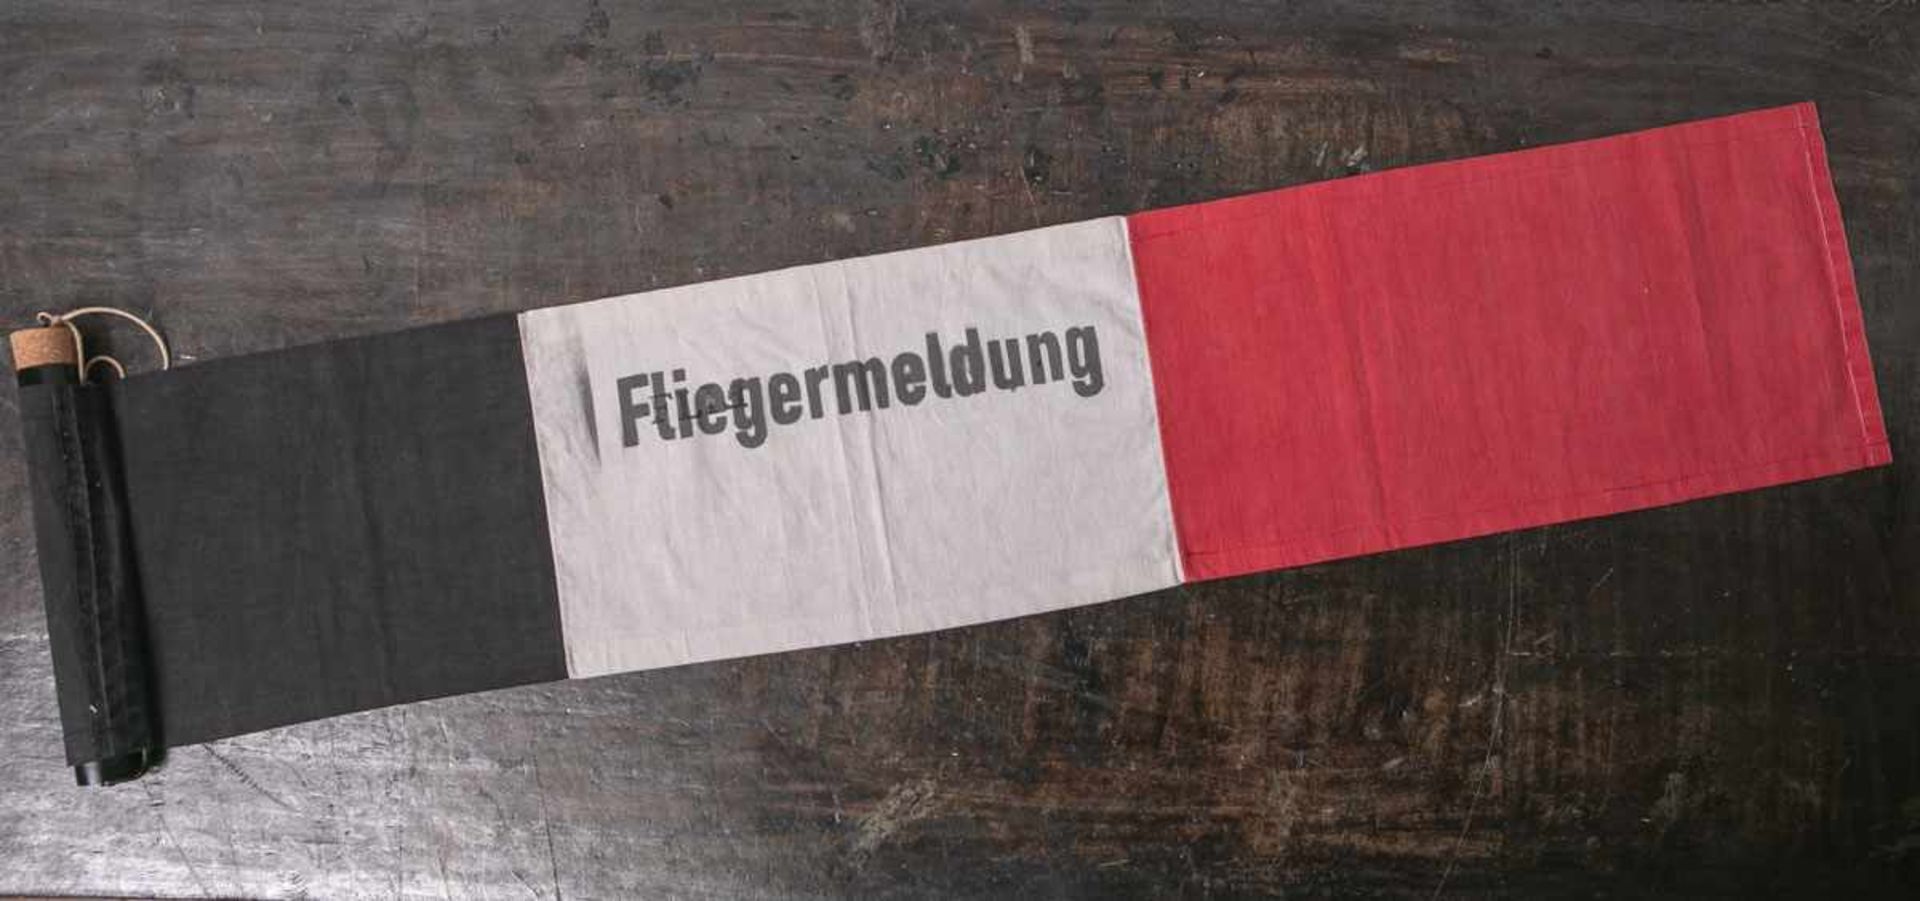 Fliegermeldung (1. WK), schwarz-weiß-rote Stofffahne m. Aufschrift "Fliegermeldung", L.<